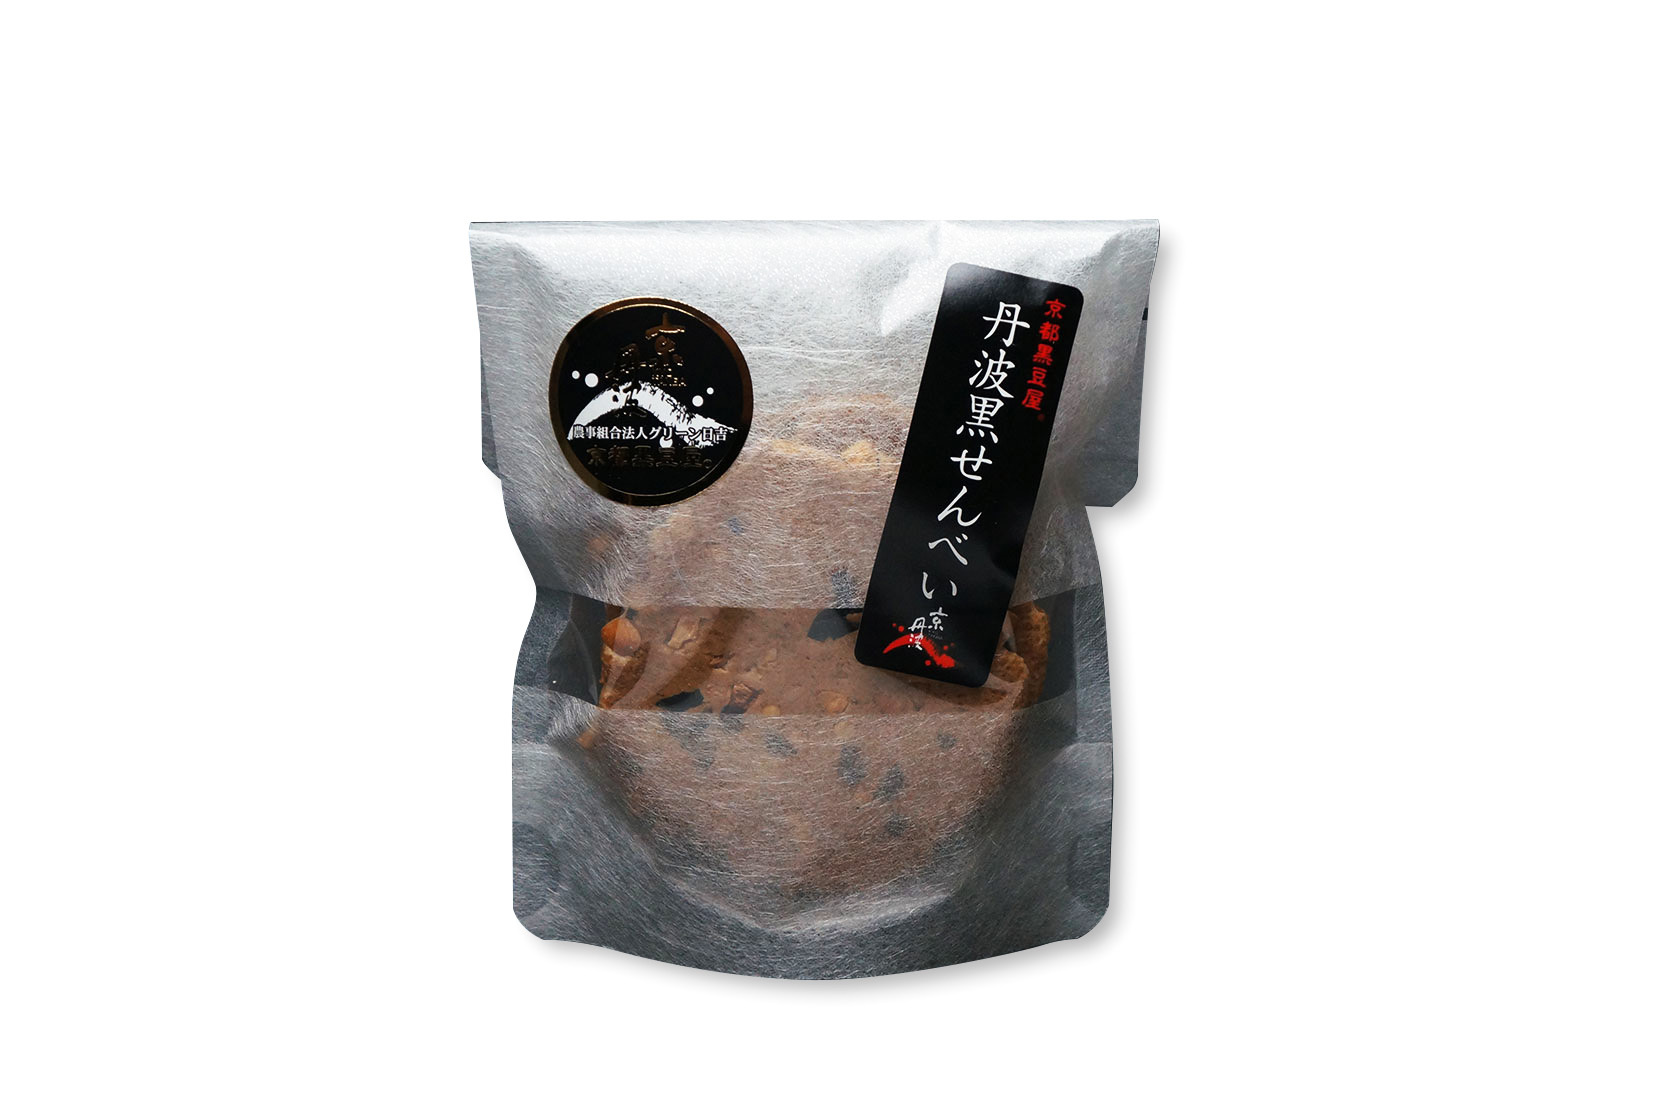 Tamba black rice crackers